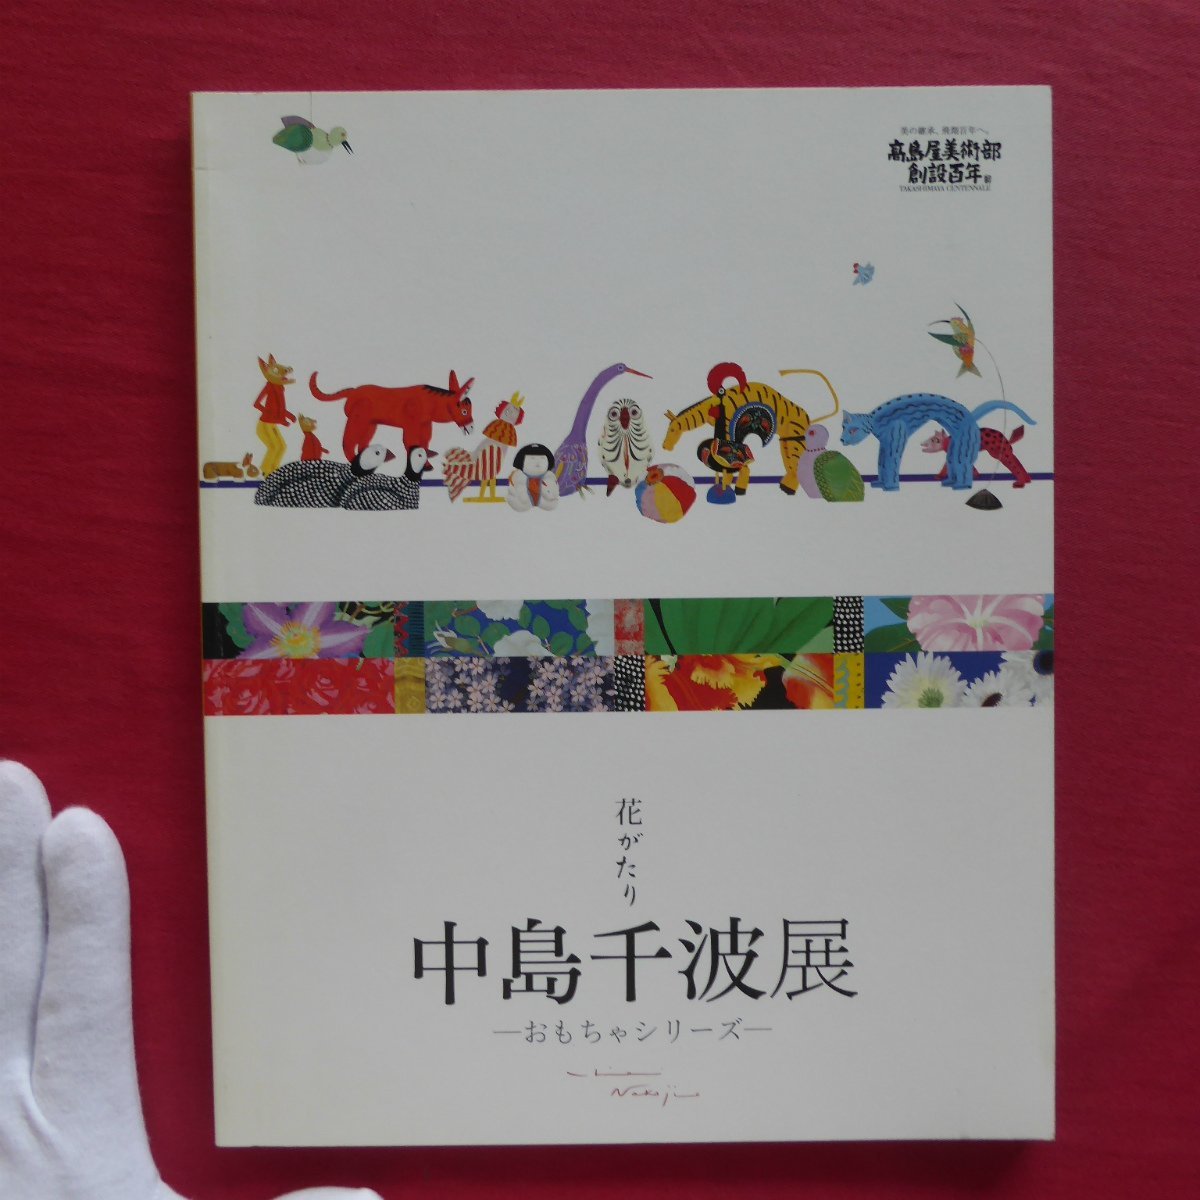 p2 Katalog [Blumengeschichte: Chinami Nakajima Ausstellung - Spielzeugserie - / 2008, [Übersetzung von Takashimaya], Malerei, Kunstbuch, Sammlung, Katalog